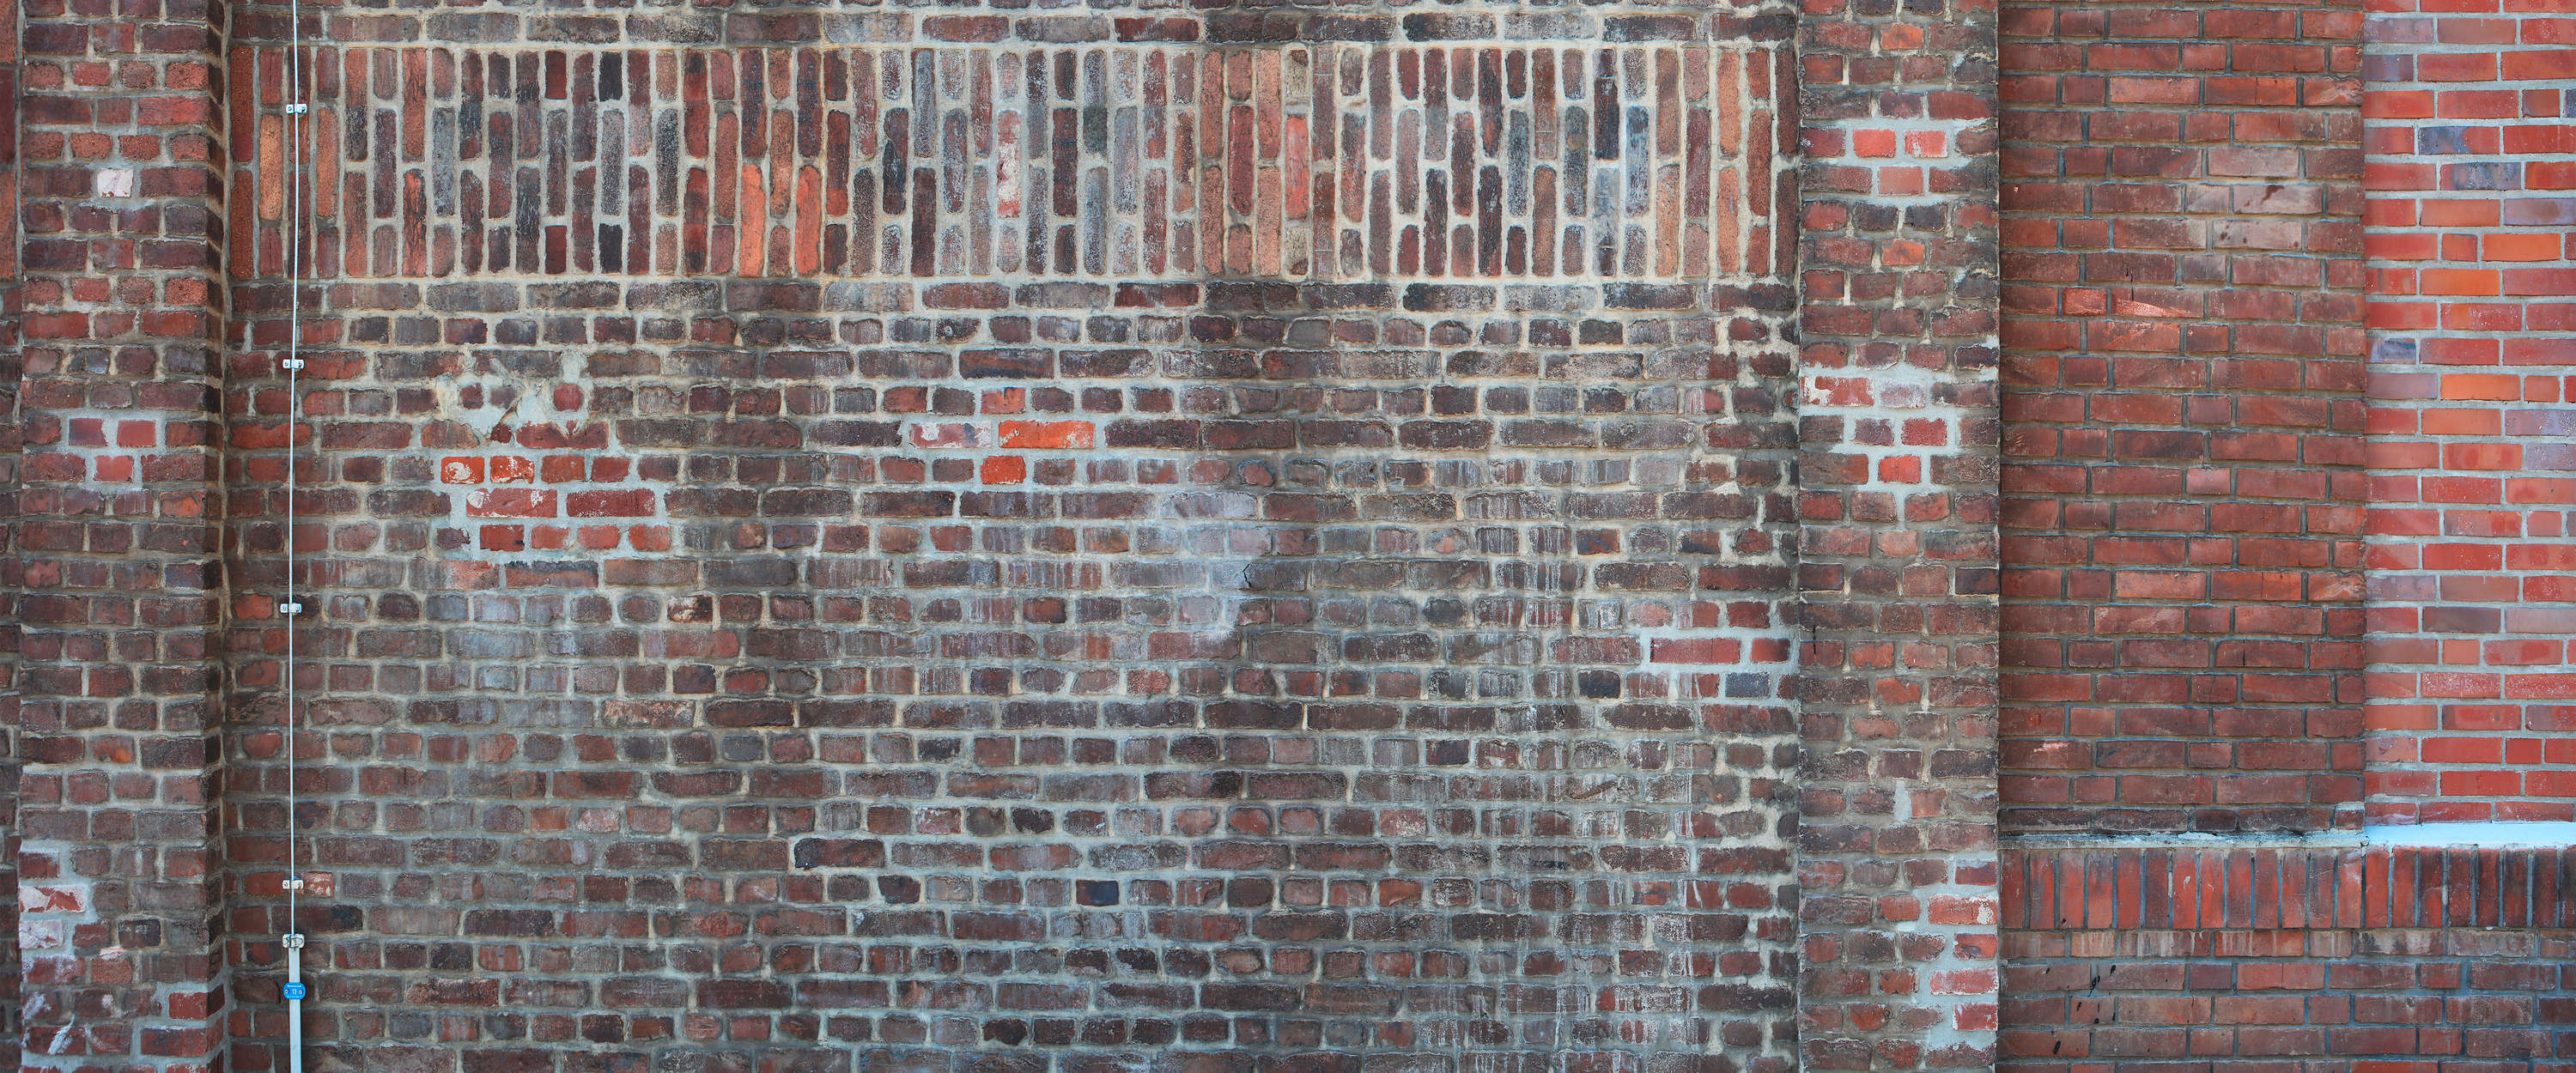             Fototapete rote Backstein Mauer im Industrial Stil
        